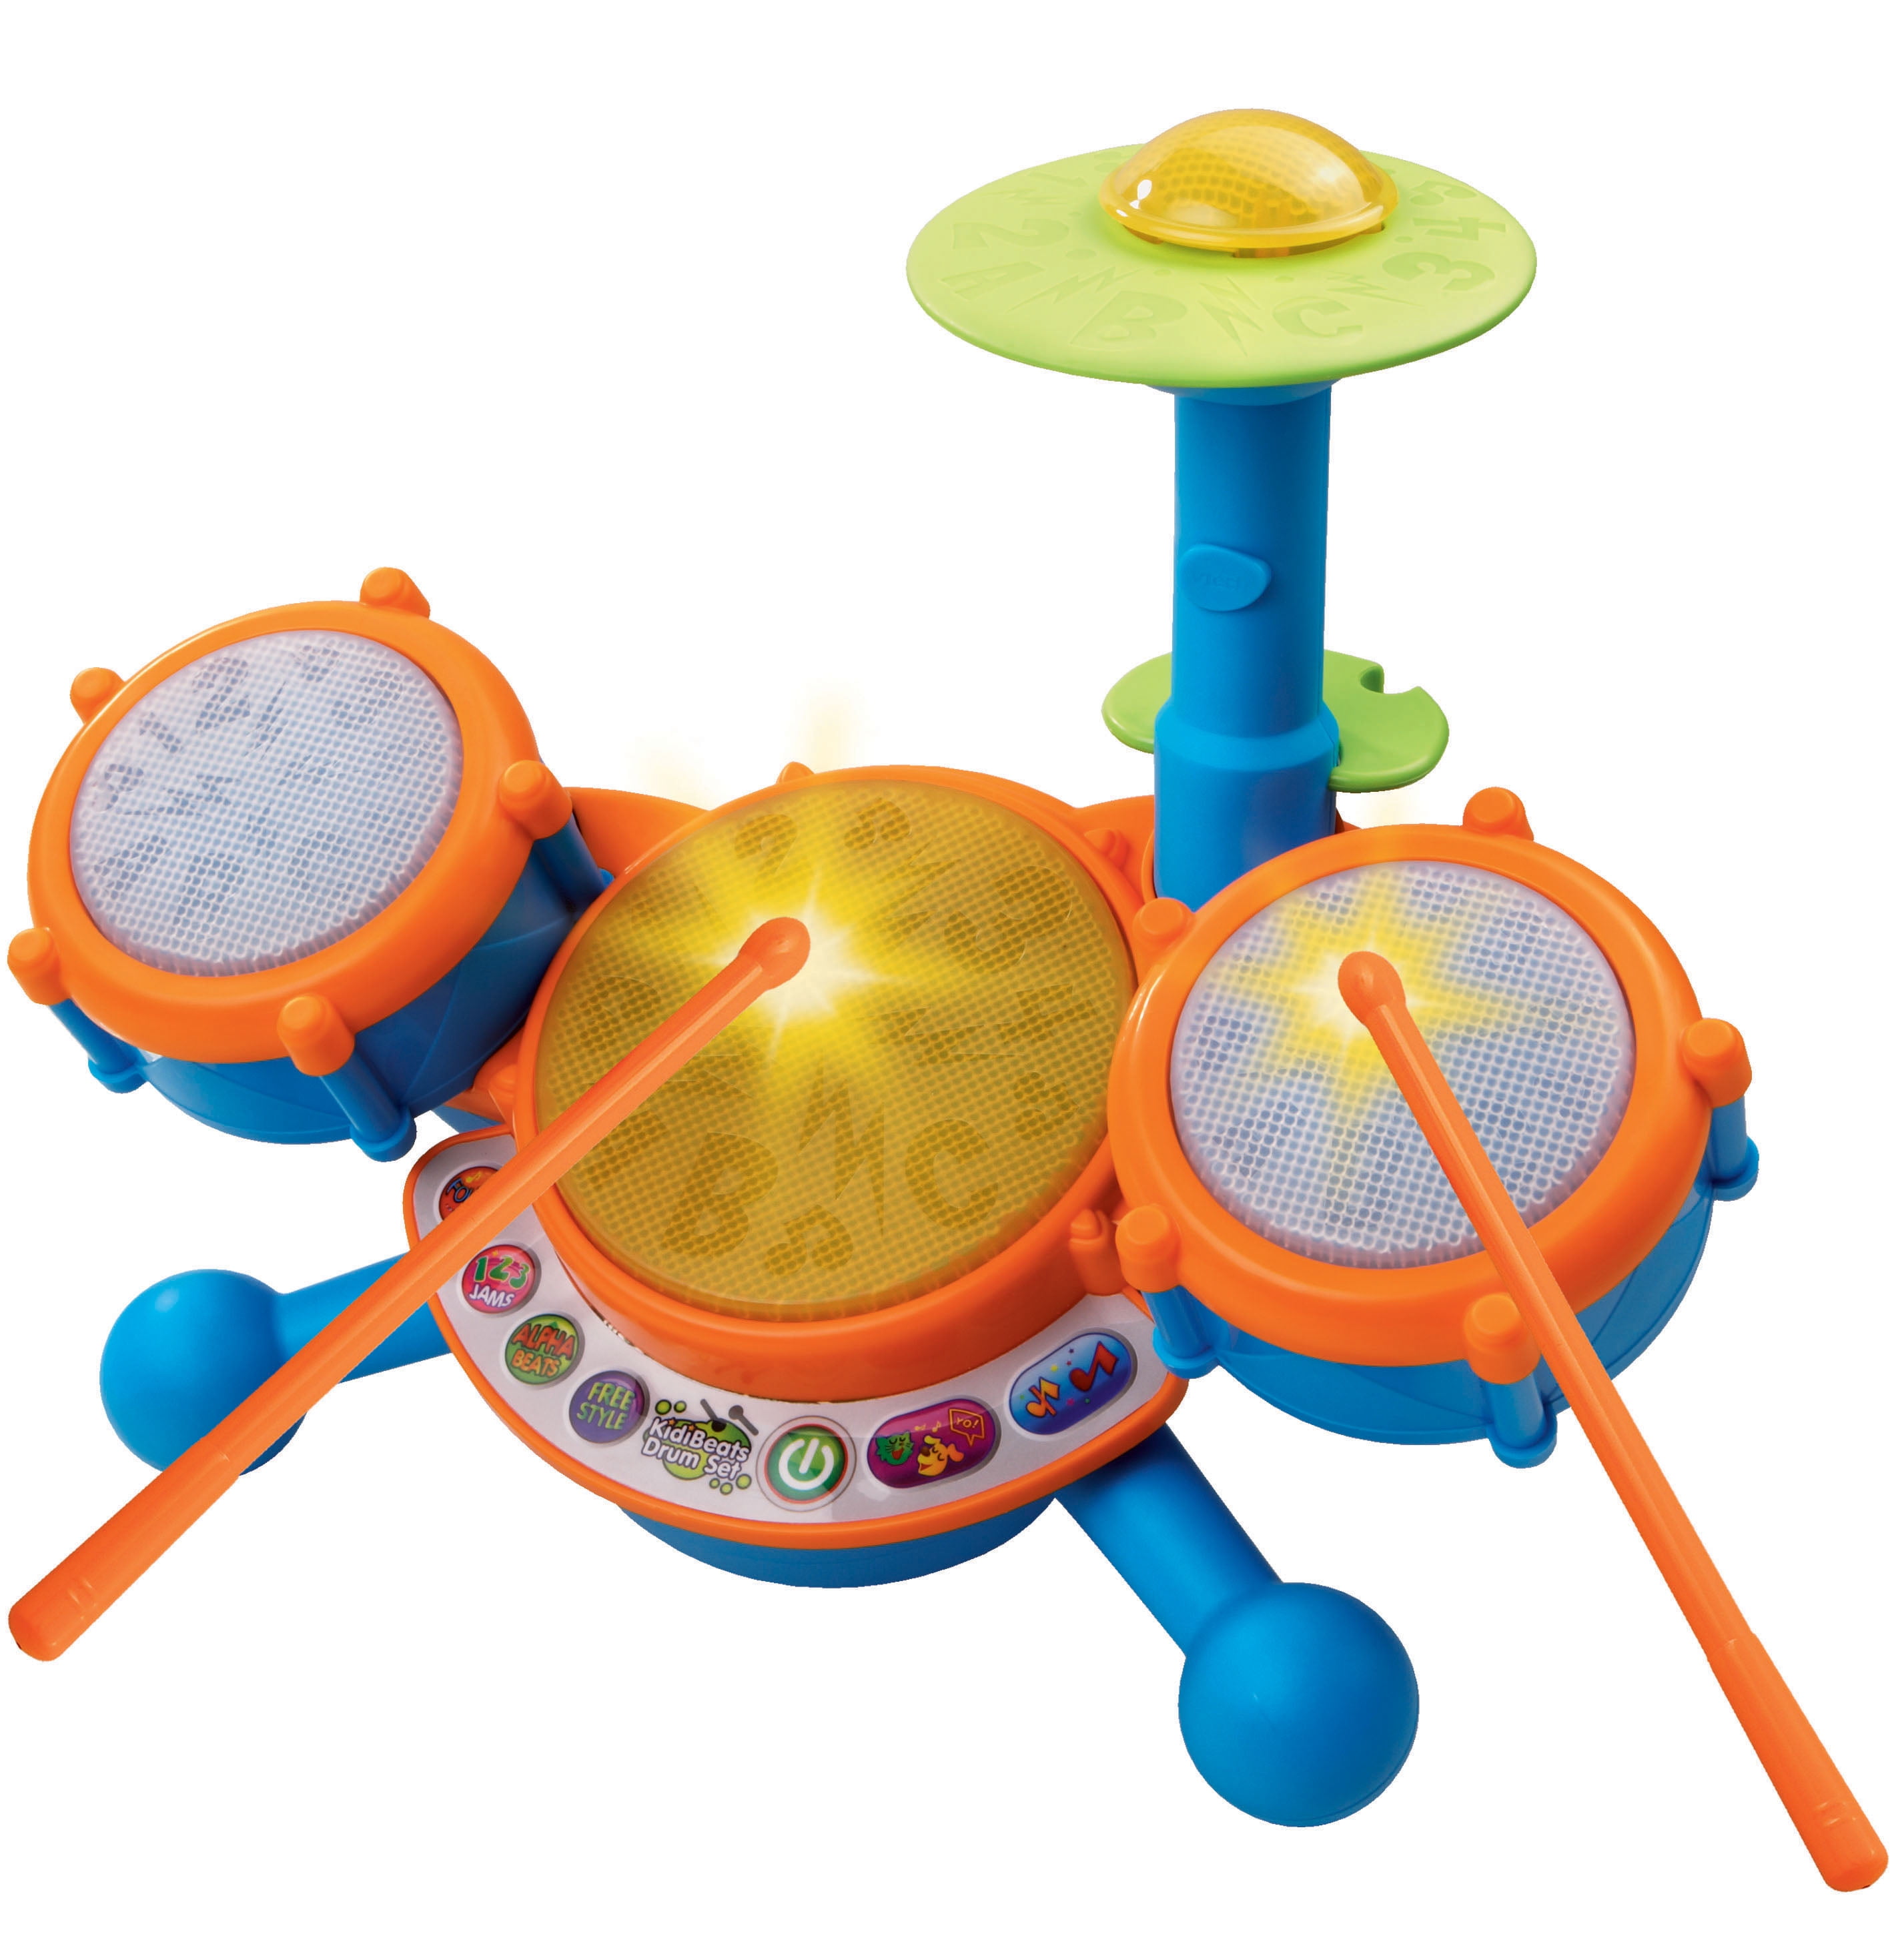 KidiBeats Drum Set, Music Toy